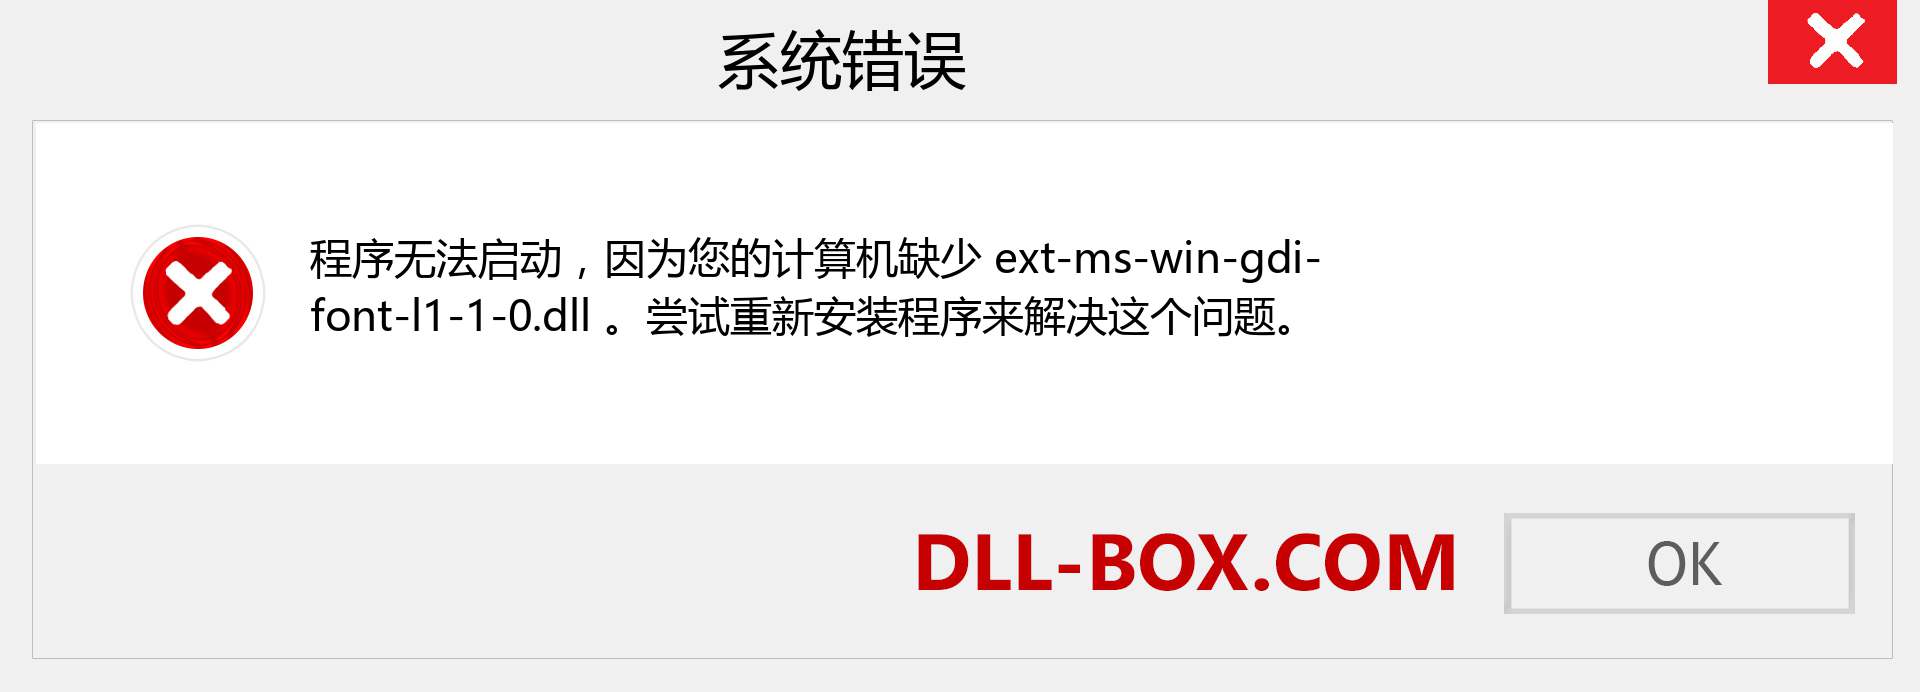 ext-ms-win-gdi-font-l1-1-0.dll 文件丢失？。 适用于 Windows 7、8、10 的下载 - 修复 Windows、照片、图像上的 ext-ms-win-gdi-font-l1-1-0 dll 丢失错误